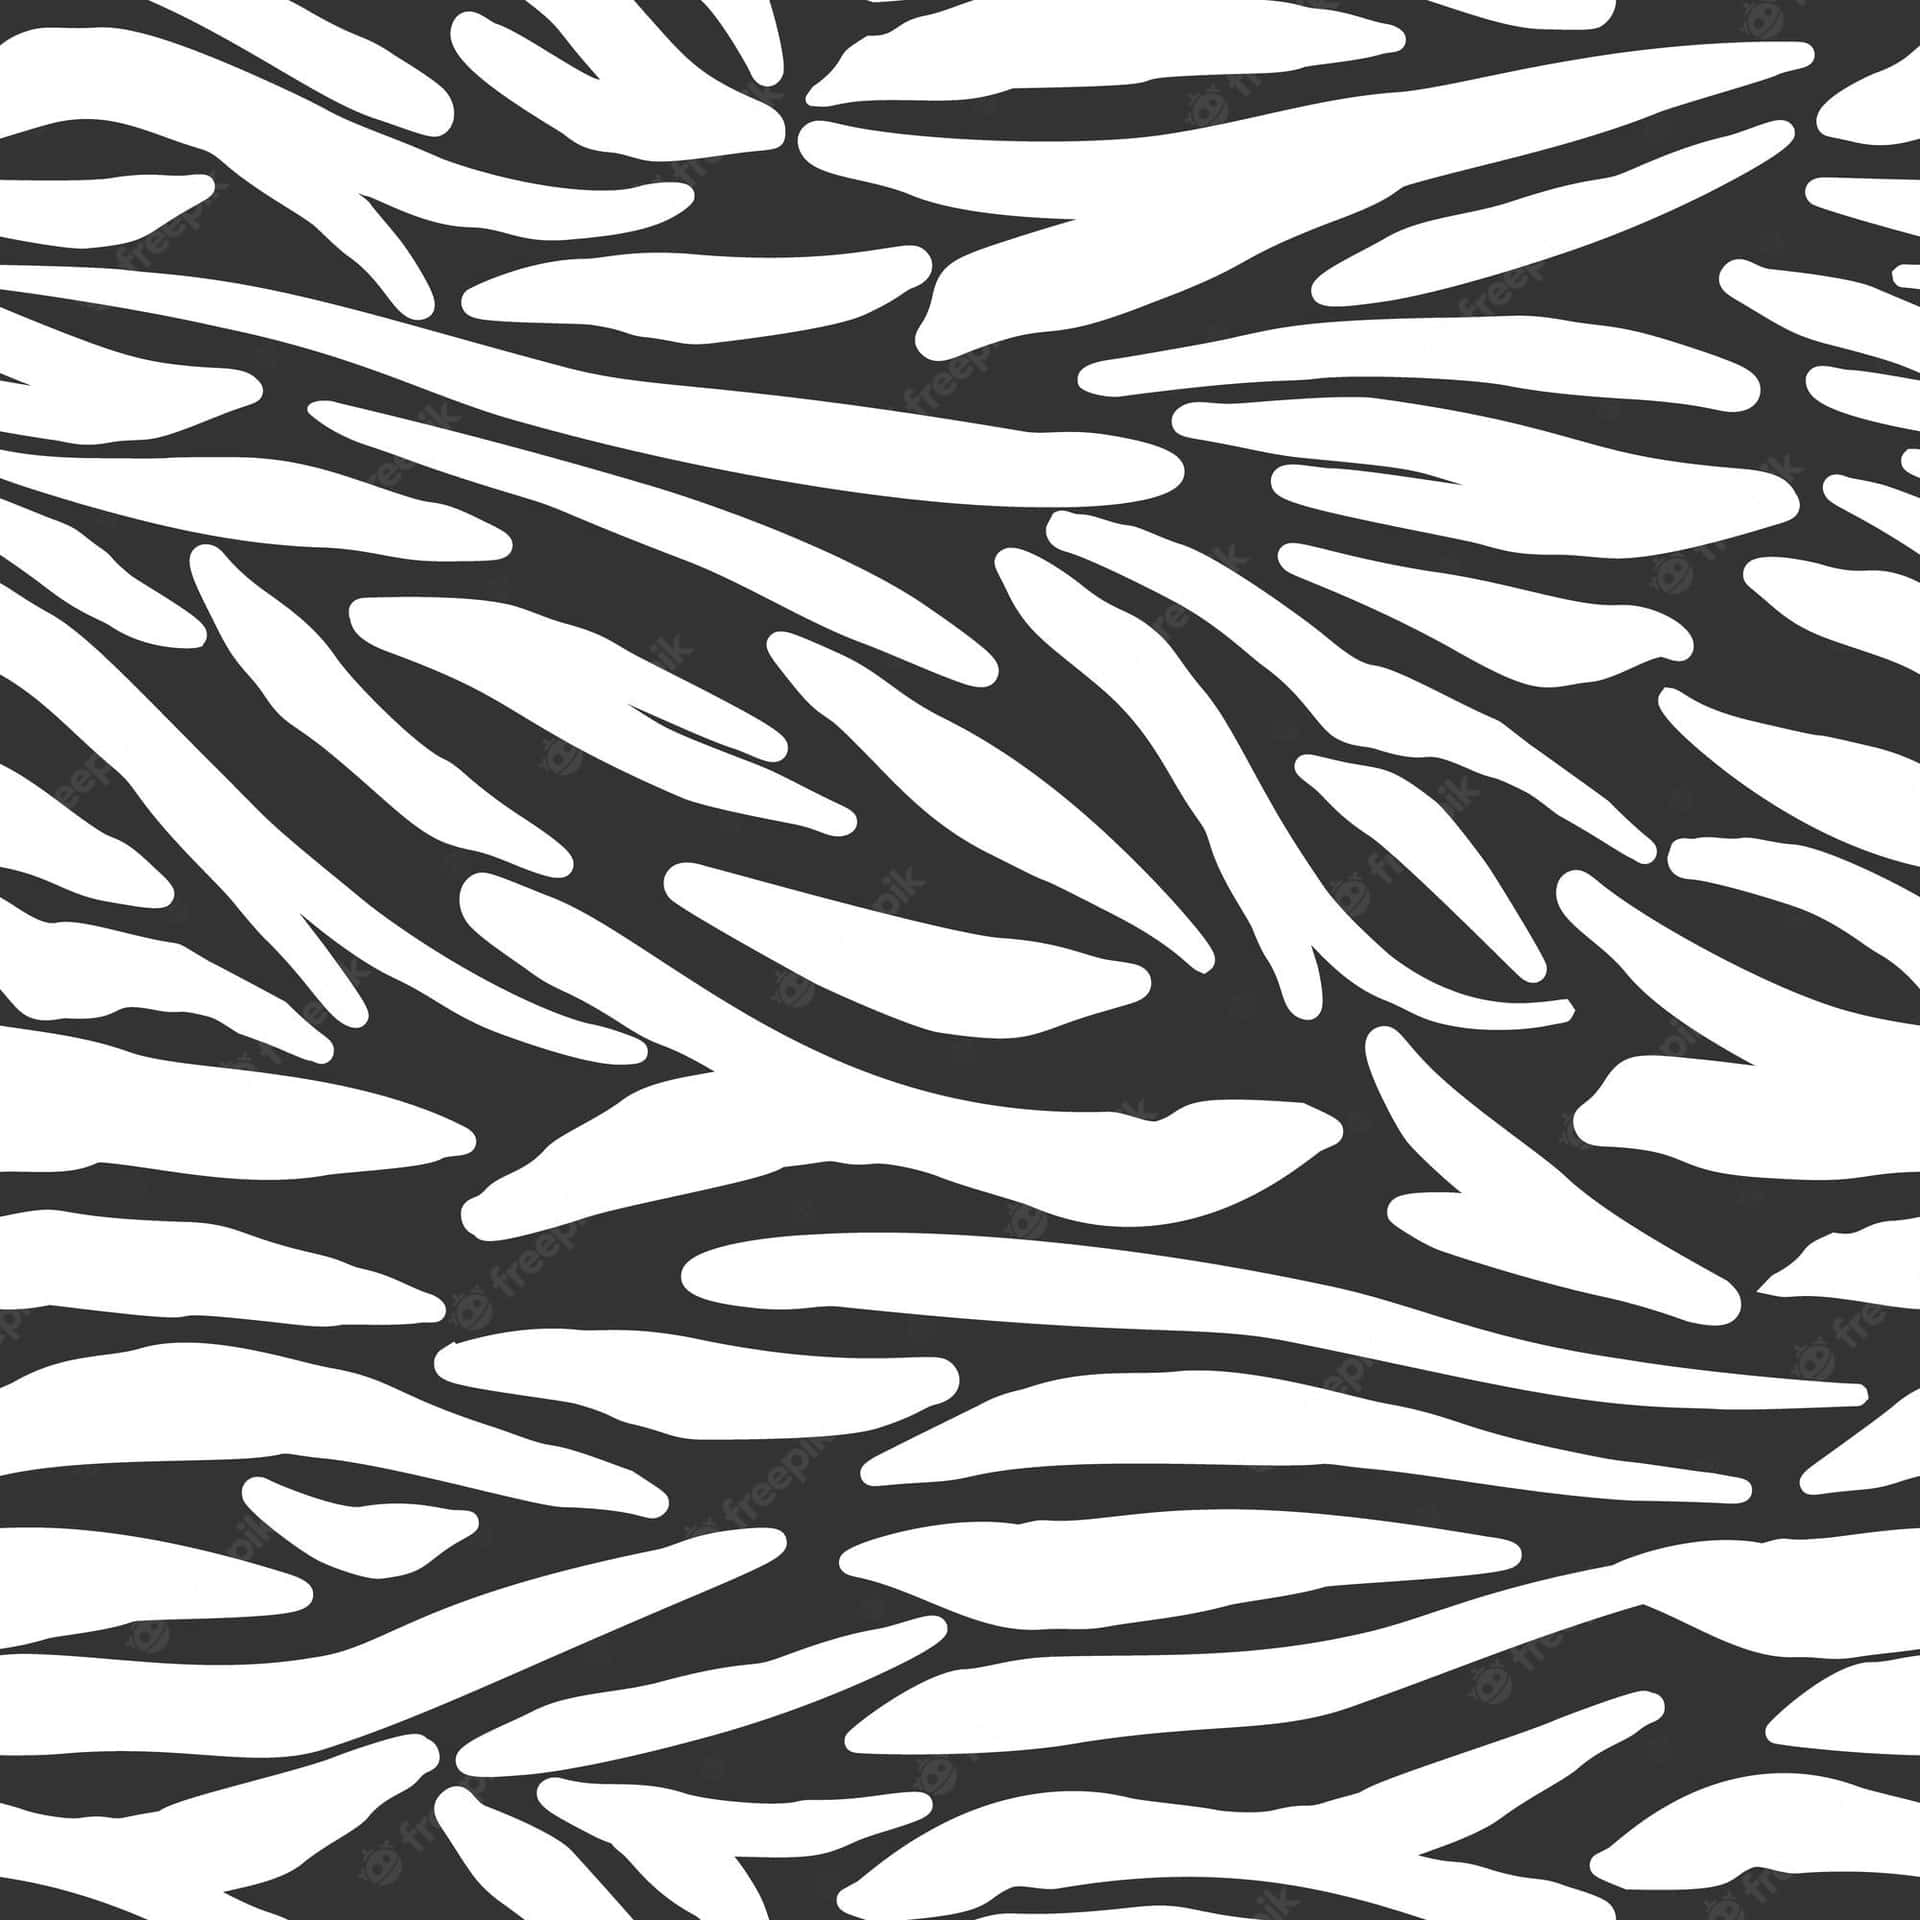 Umpadrão De Impressão De Zebra Preto E Branco. Papel de Parede